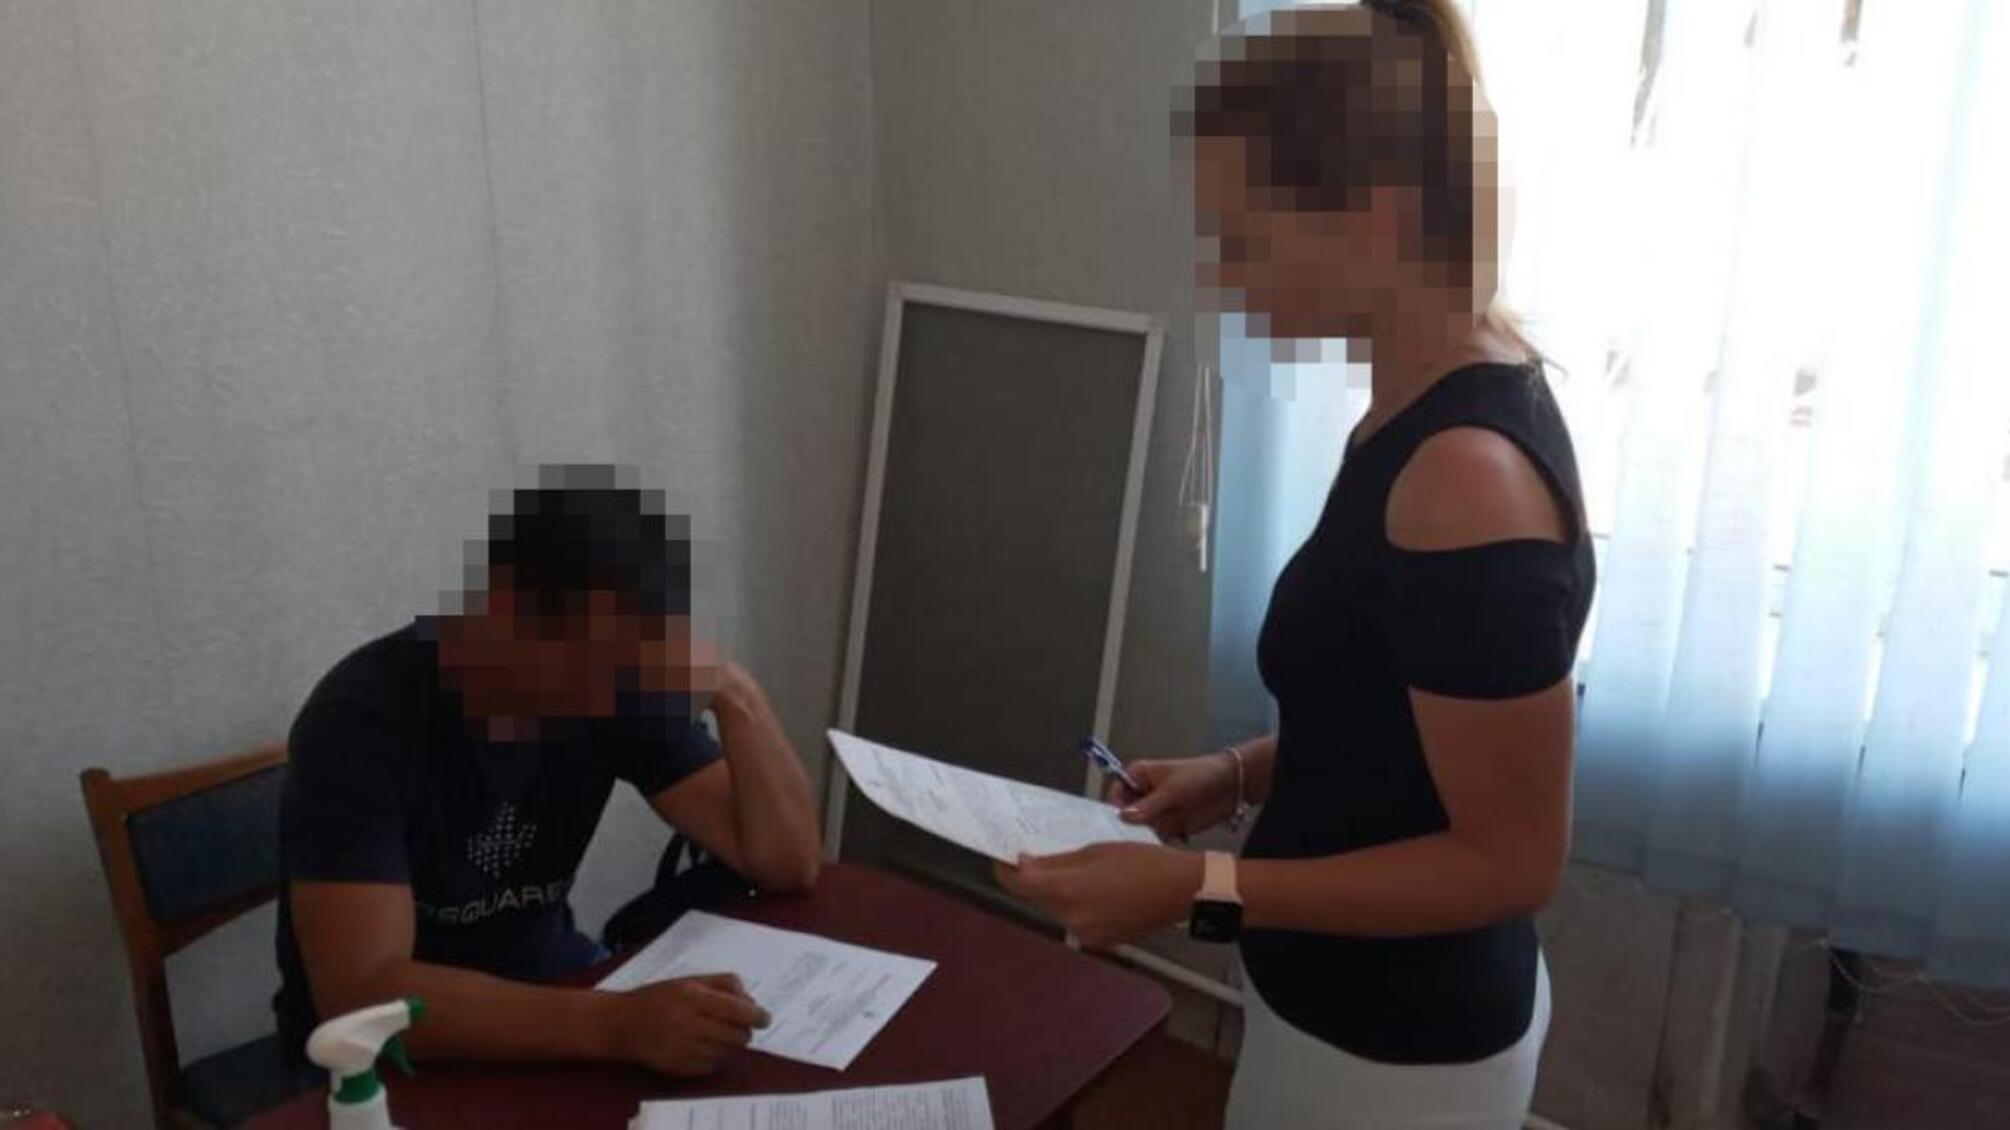 ДБР повідомило про підозру колишньому поліцейському з Кіровоградщини у спробі зґвалтуванні дівчини (ОНОВЛЕНО)